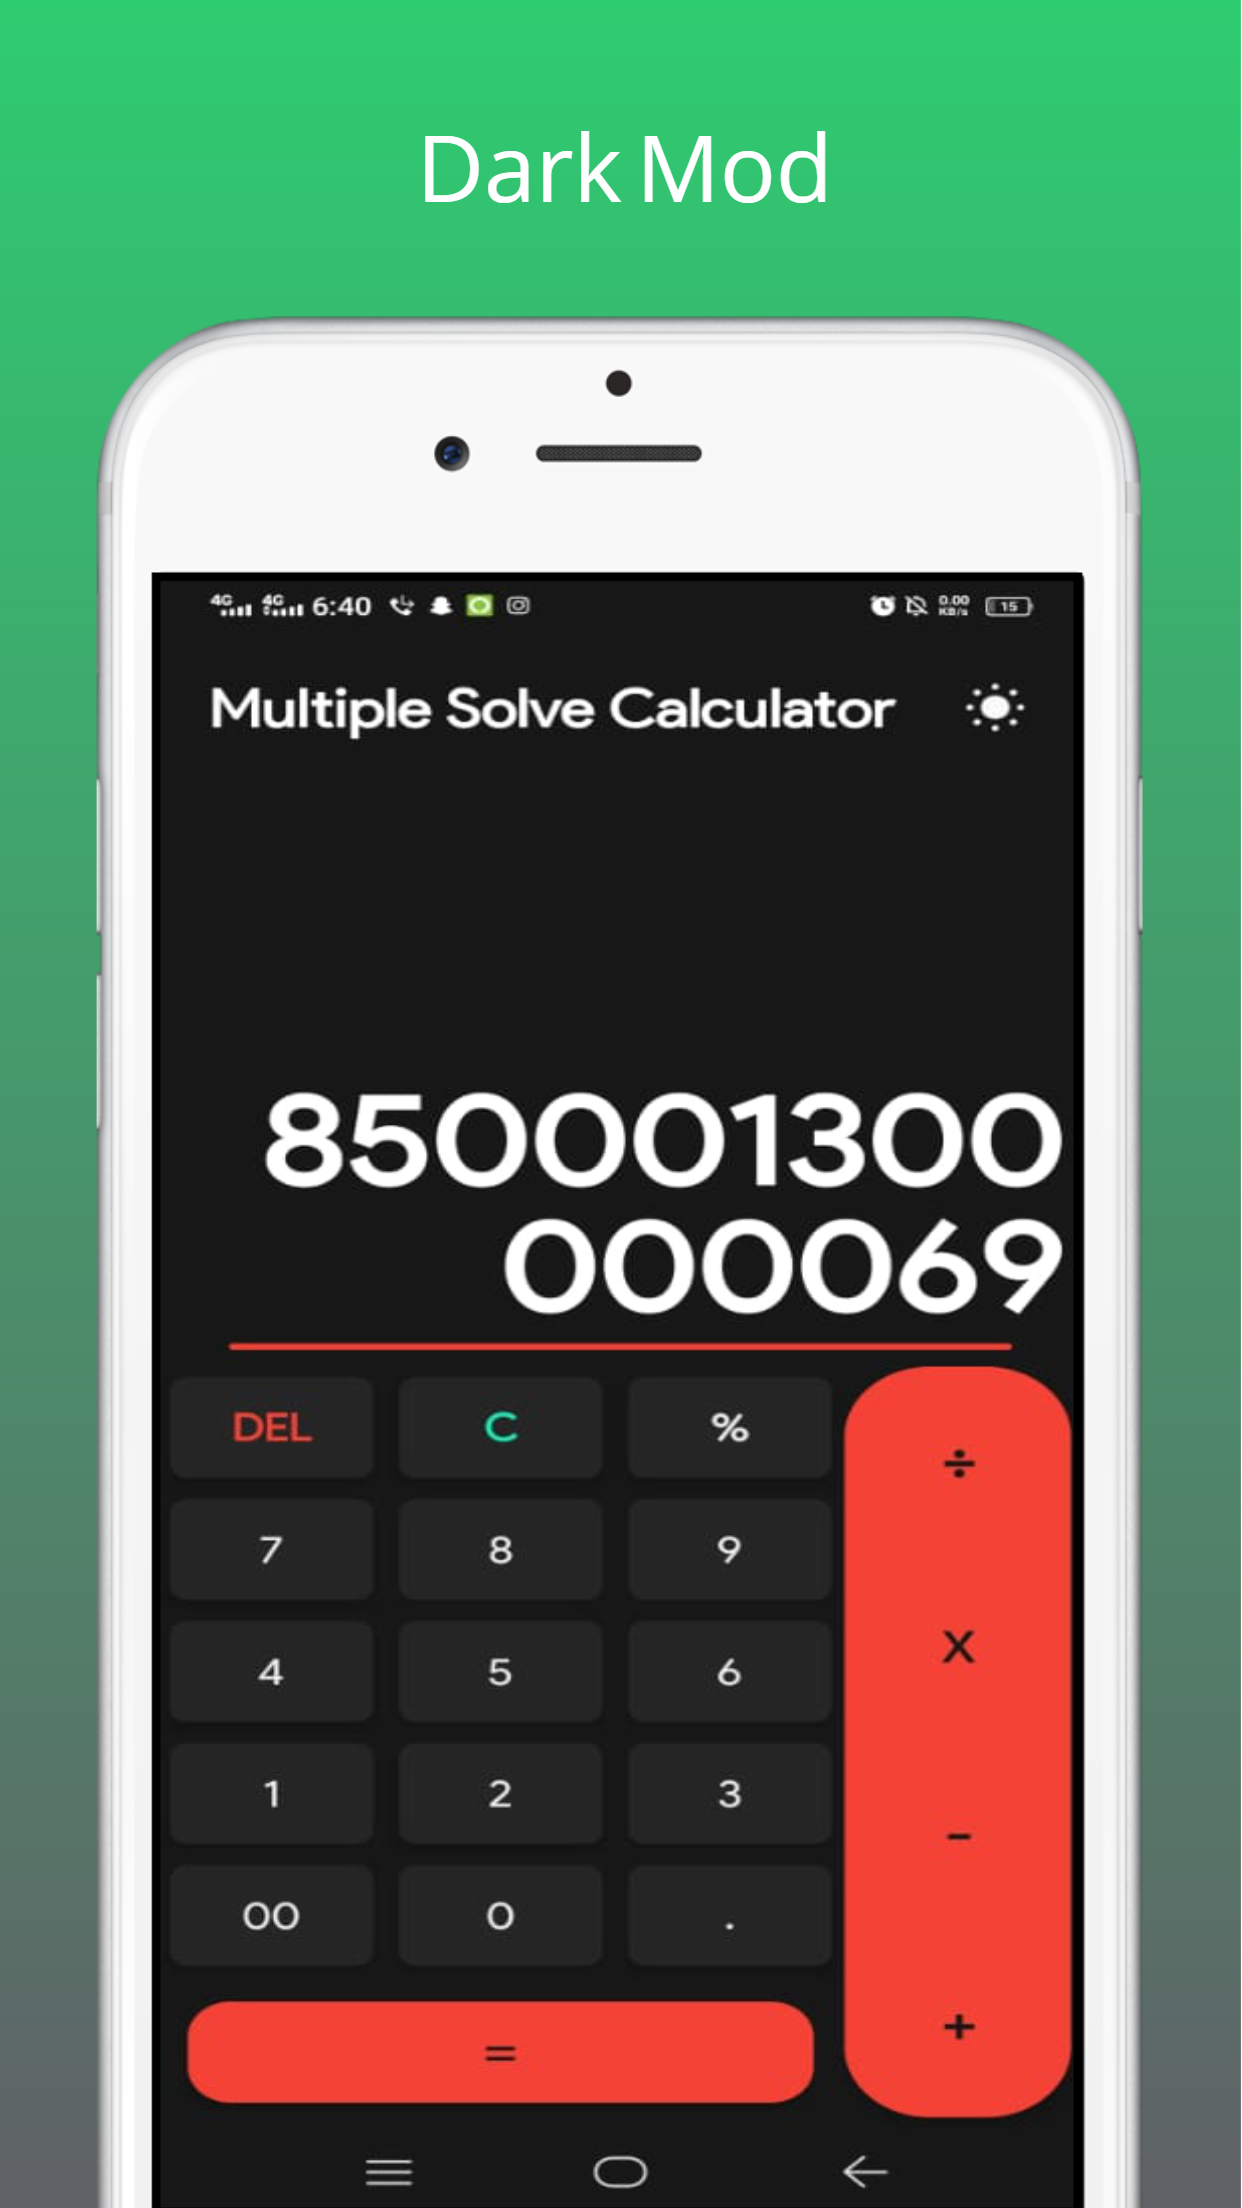 Multiple Solve Calculator